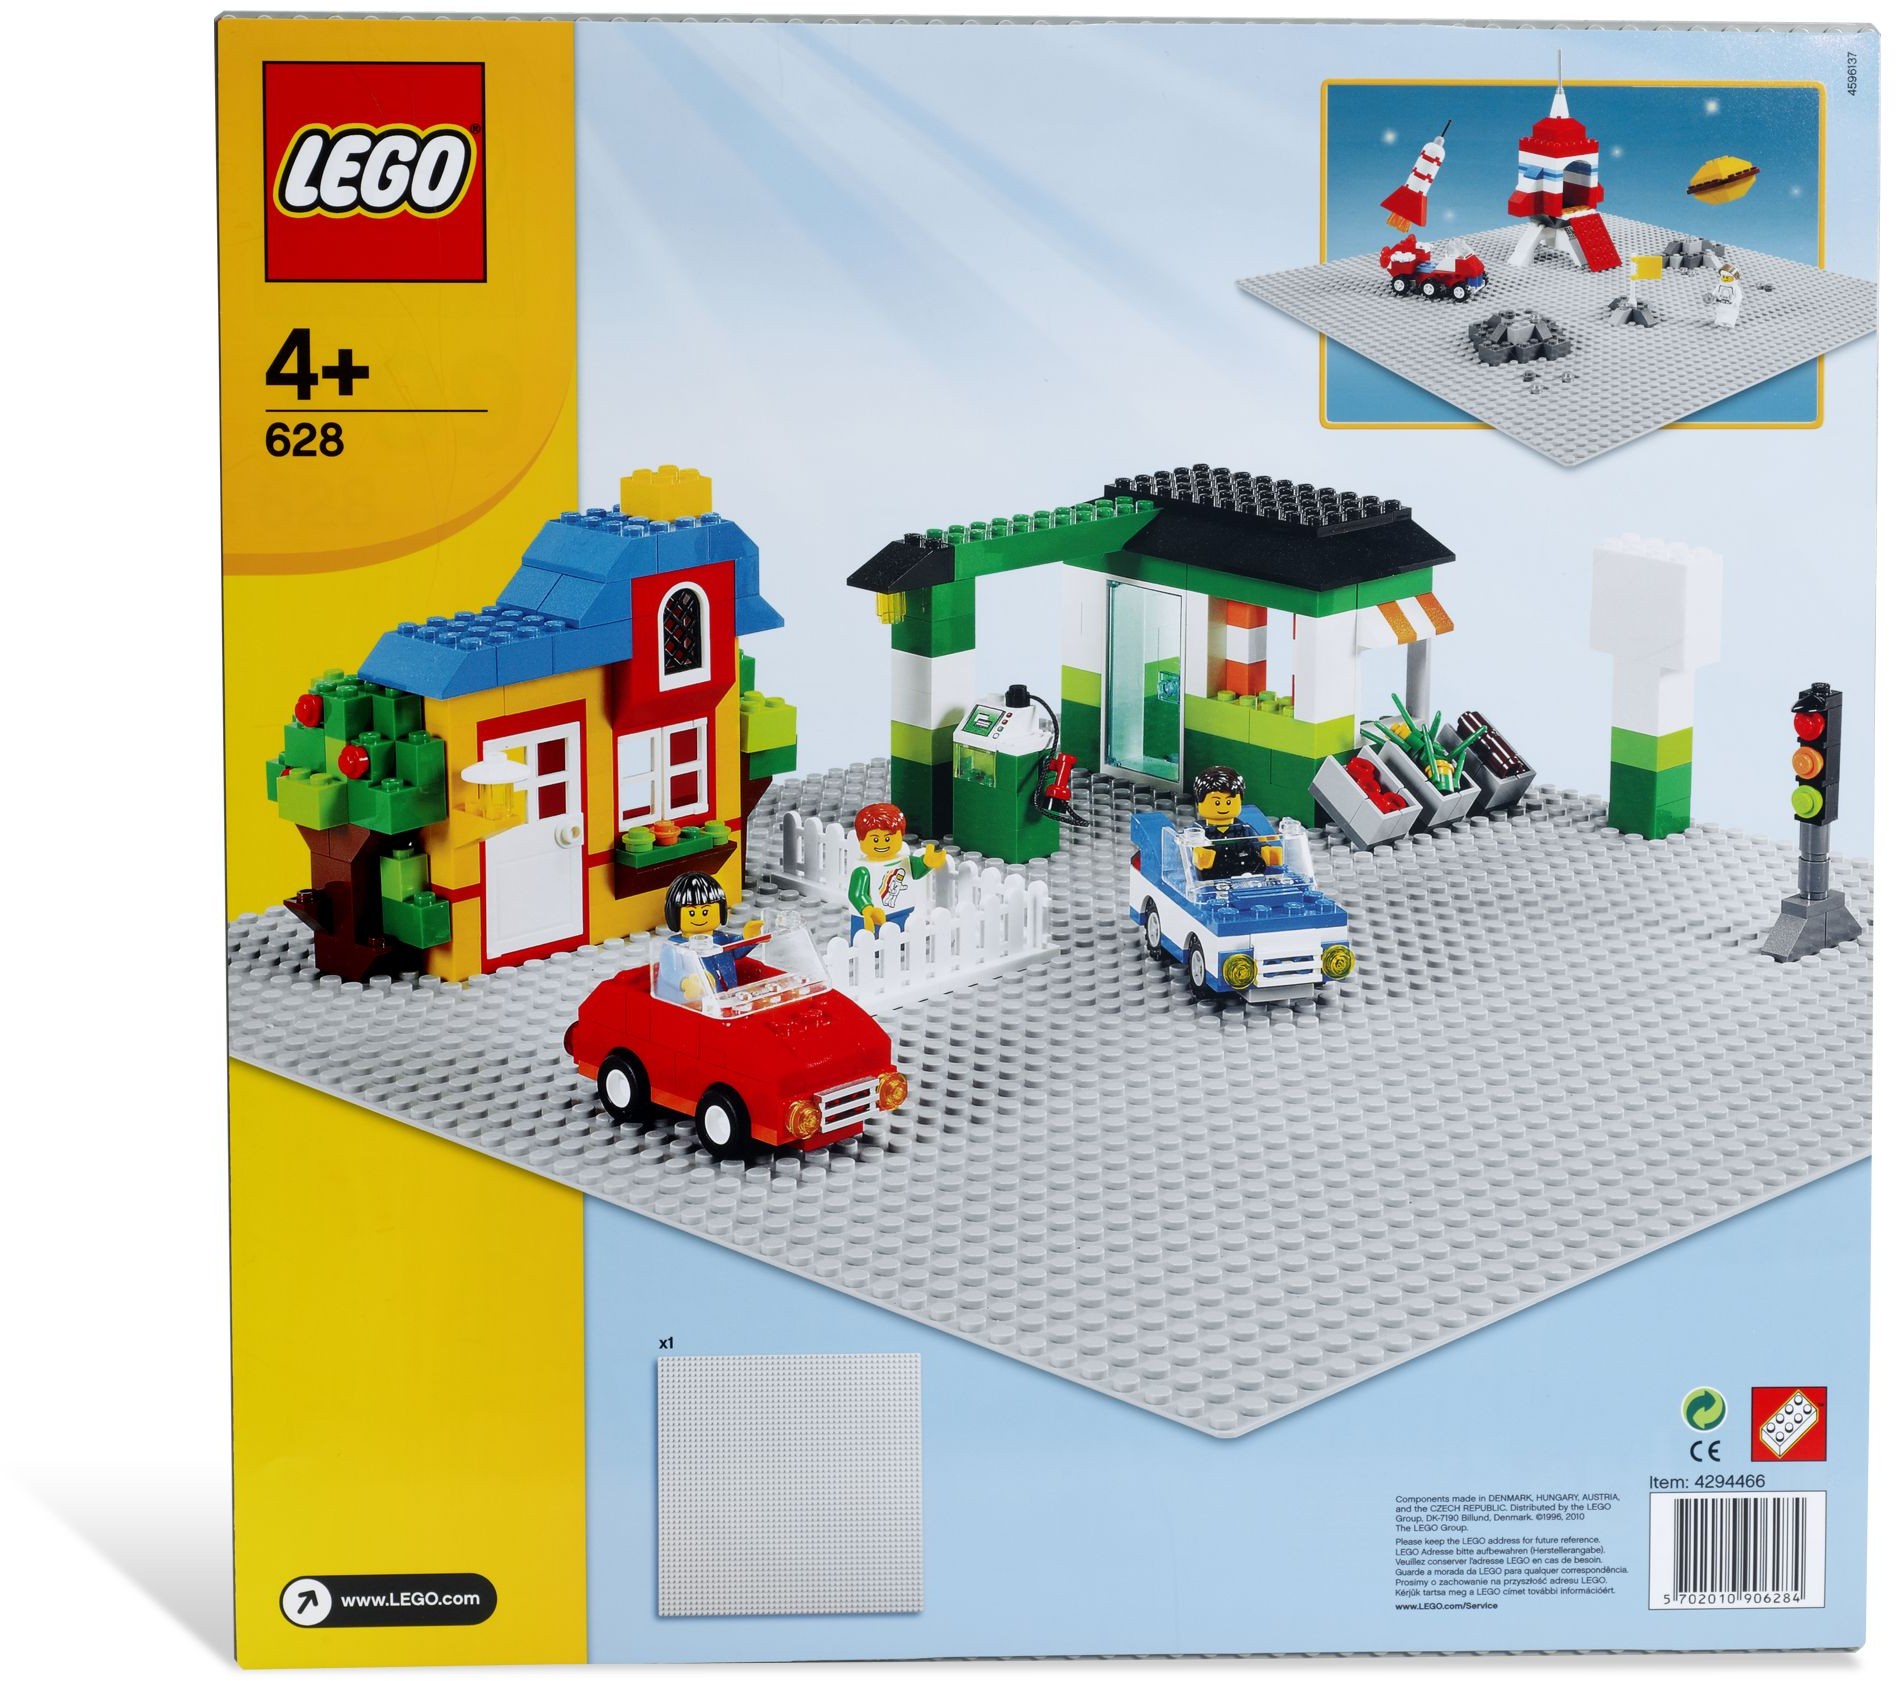 LEGO Basic Was available LEGO.com in US/CA | Brickset